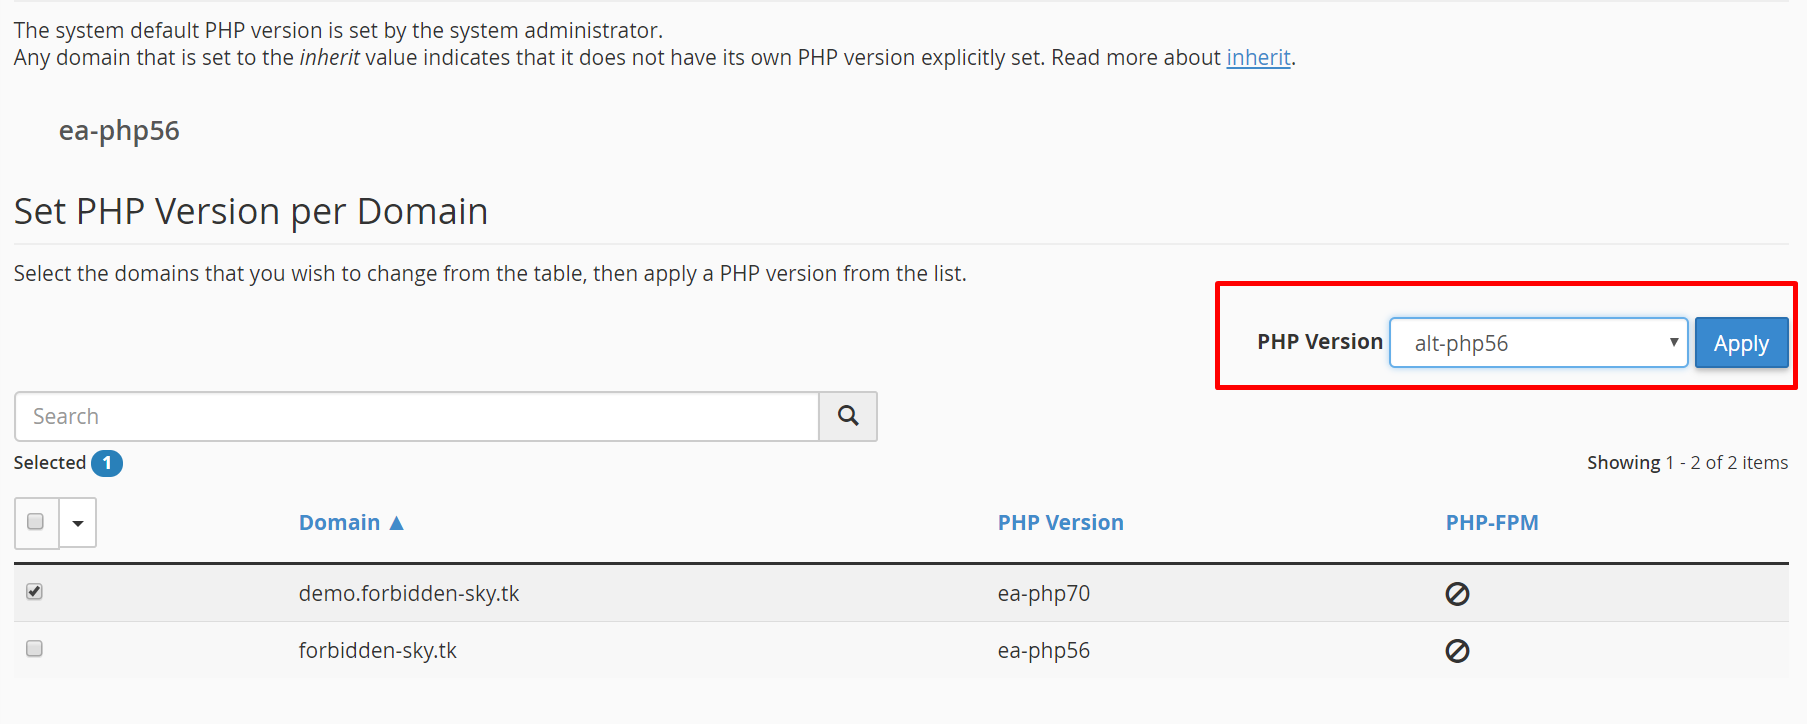 Panduan Cara Menggunakan fitur Multi PHP Version